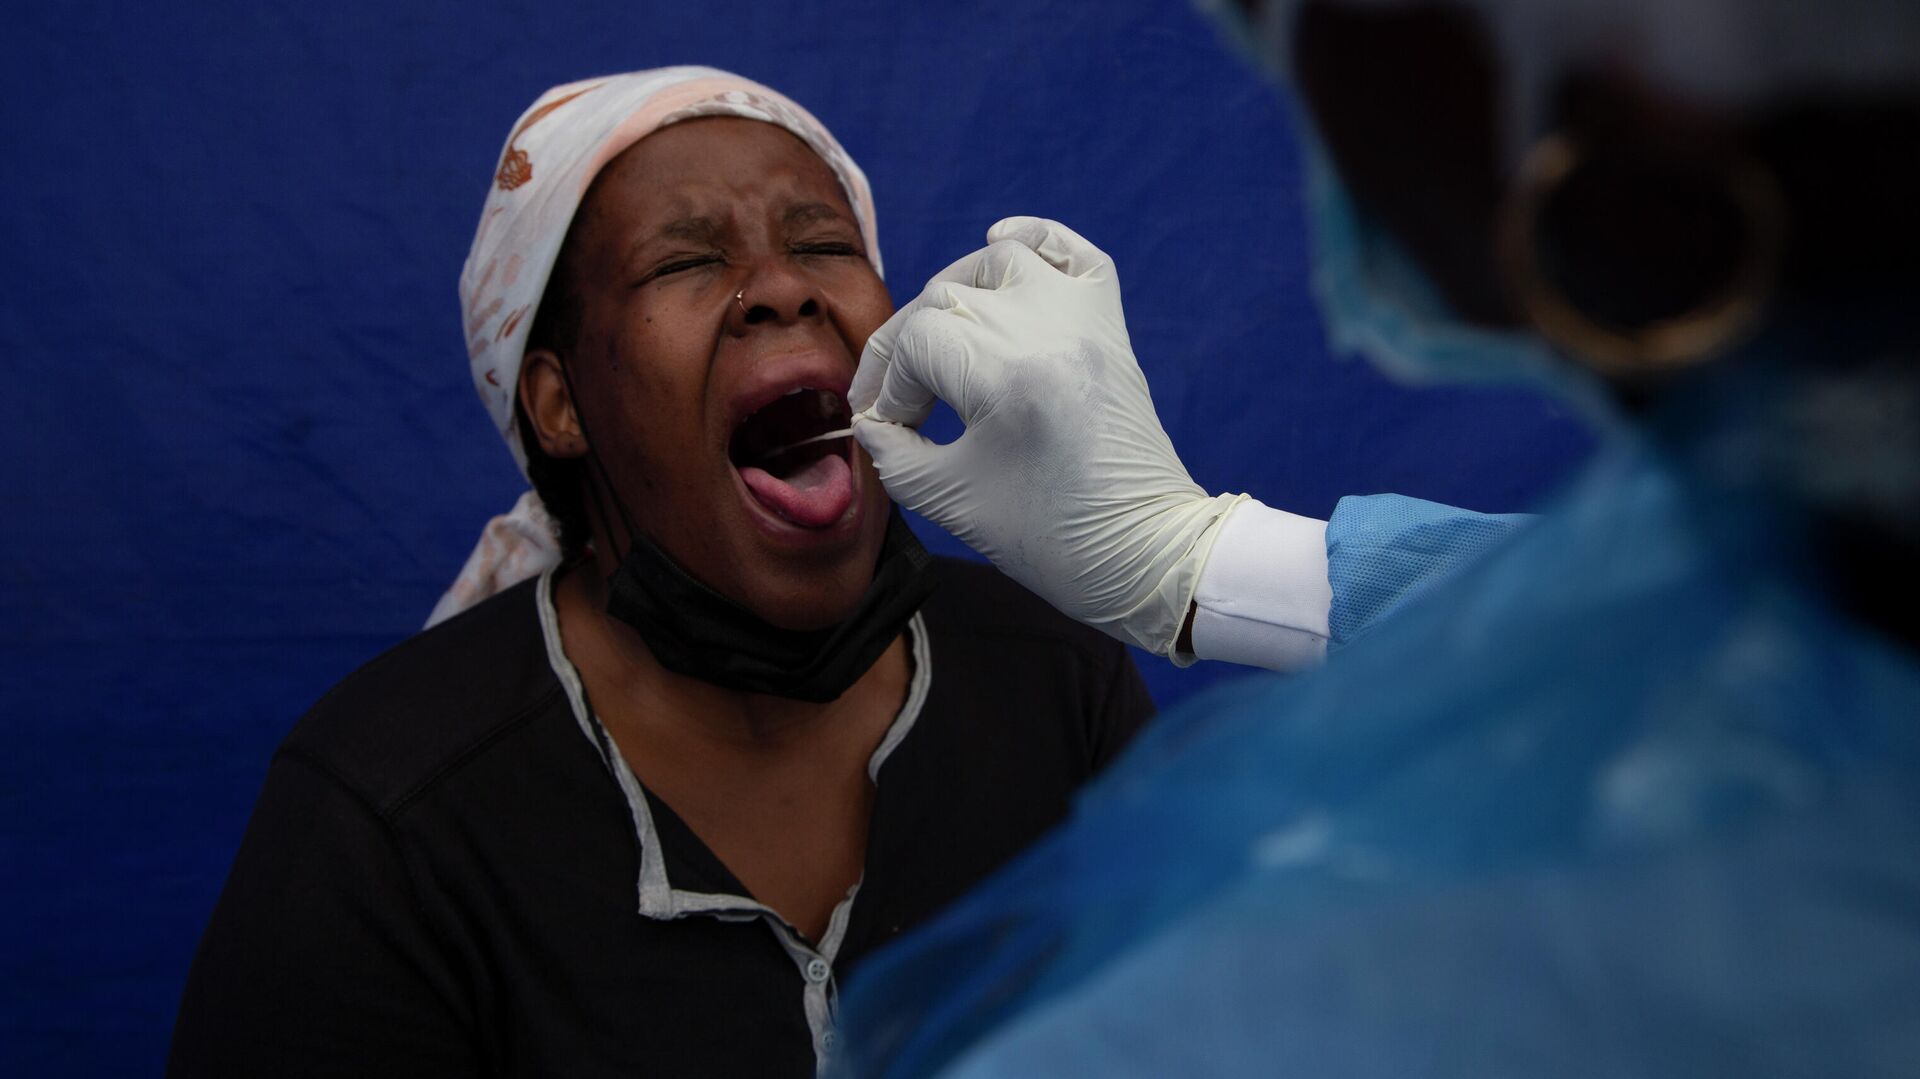 У пациента взят мазок из горла для проверки на COVID-19 в Соуэто, Южная Африка - РИА Новости, 1920, 04.12.2021